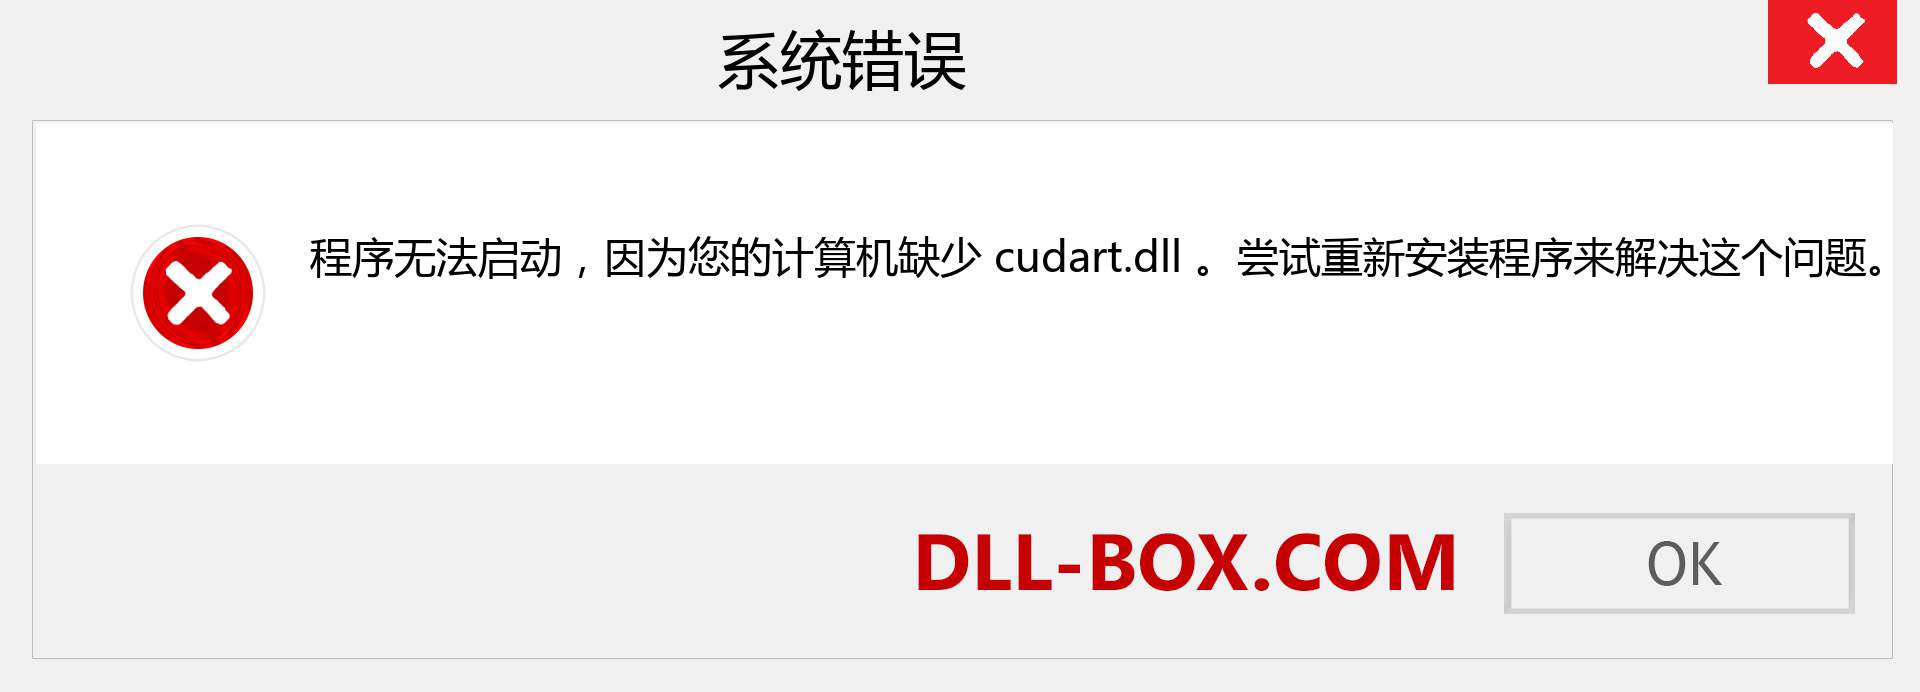 cudart.dll 文件丢失？。 适用于 Windows 7、8、10 的下载 - 修复 Windows、照片、图像上的 cudart dll 丢失错误